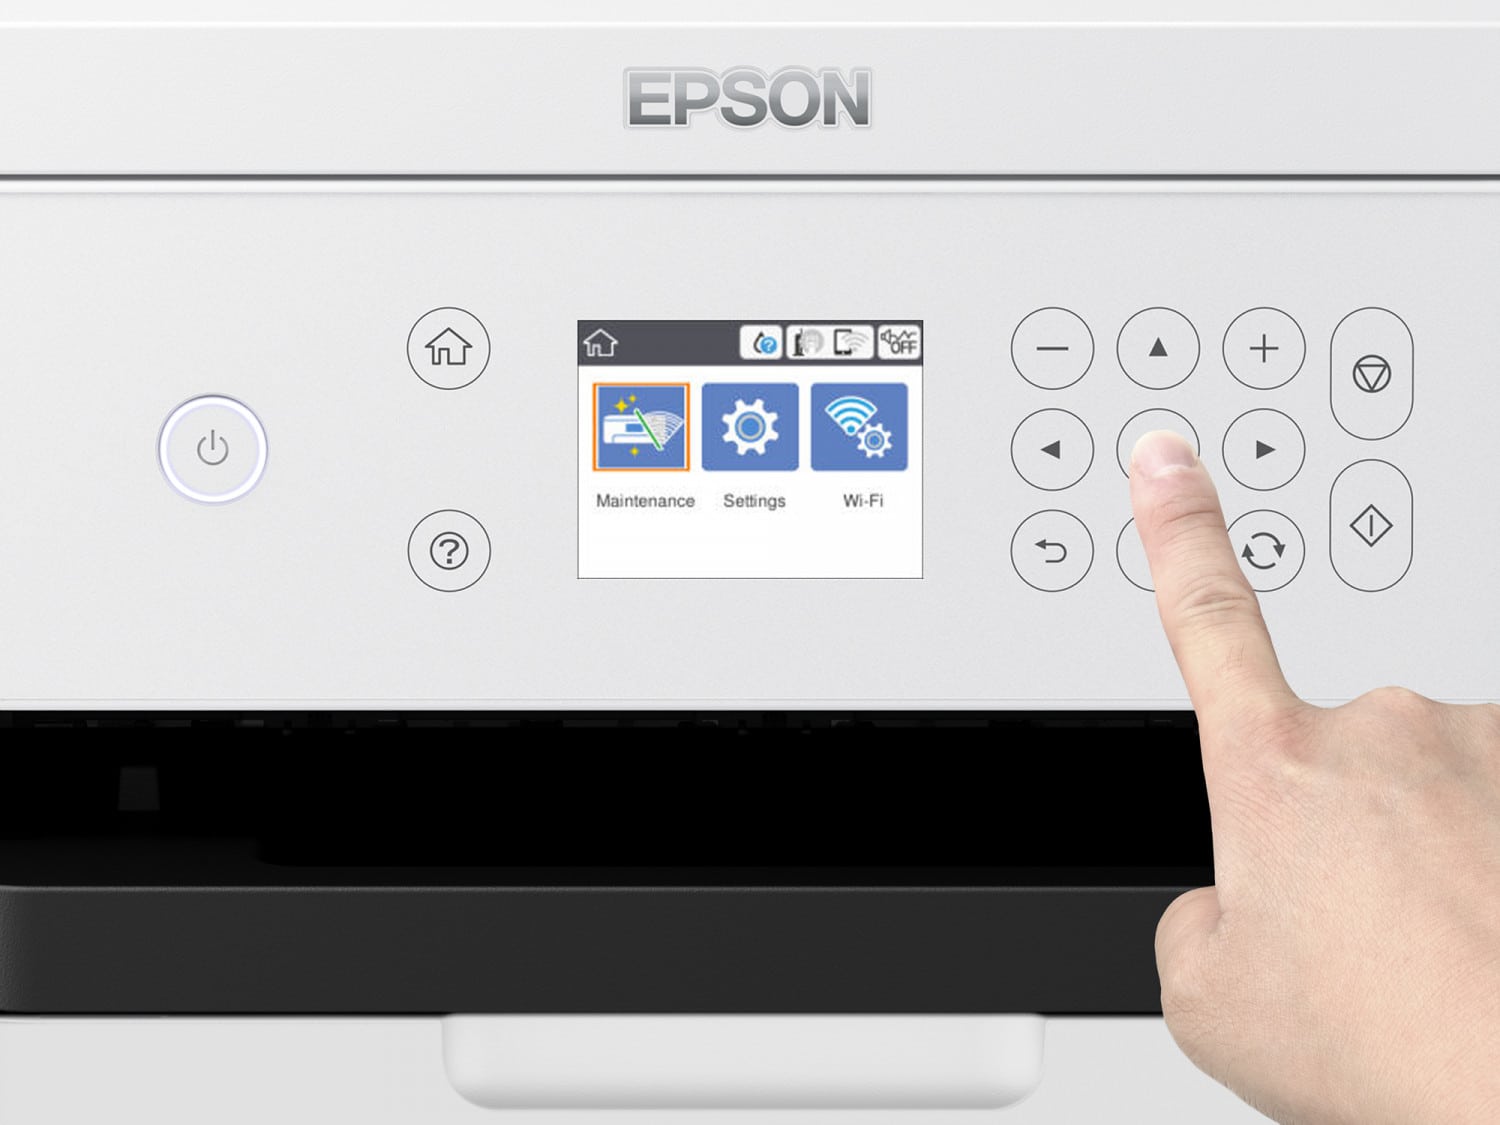 Epson SC-F100 A4 a1234 productpicture hires en int surecolor sc f100 black 12 2.jpg vikiallo